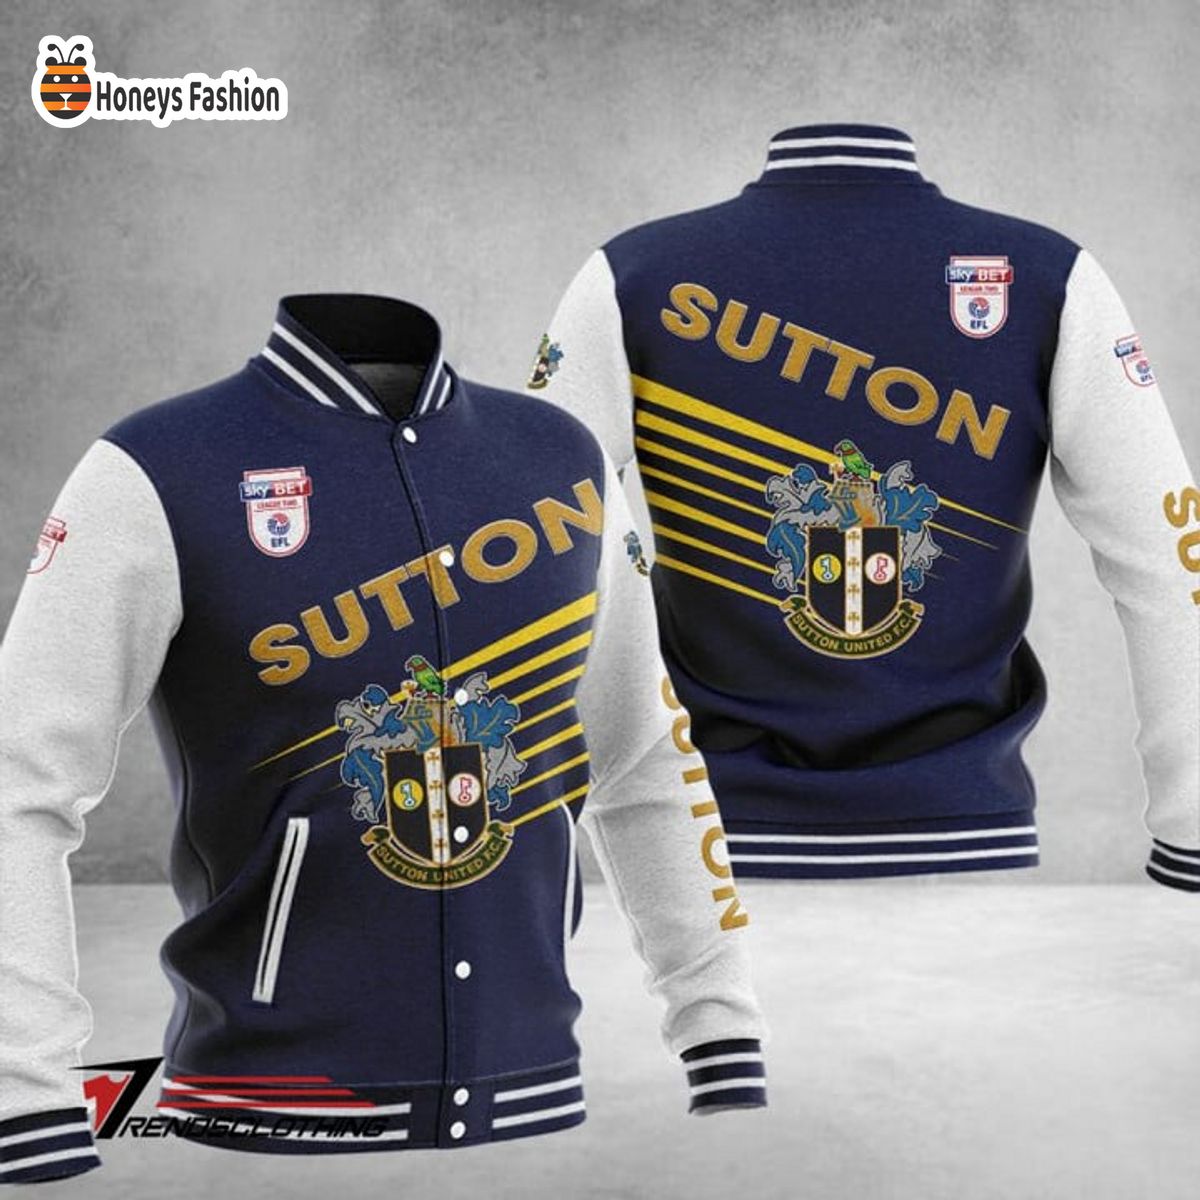 Sutton United Baseball Jacket